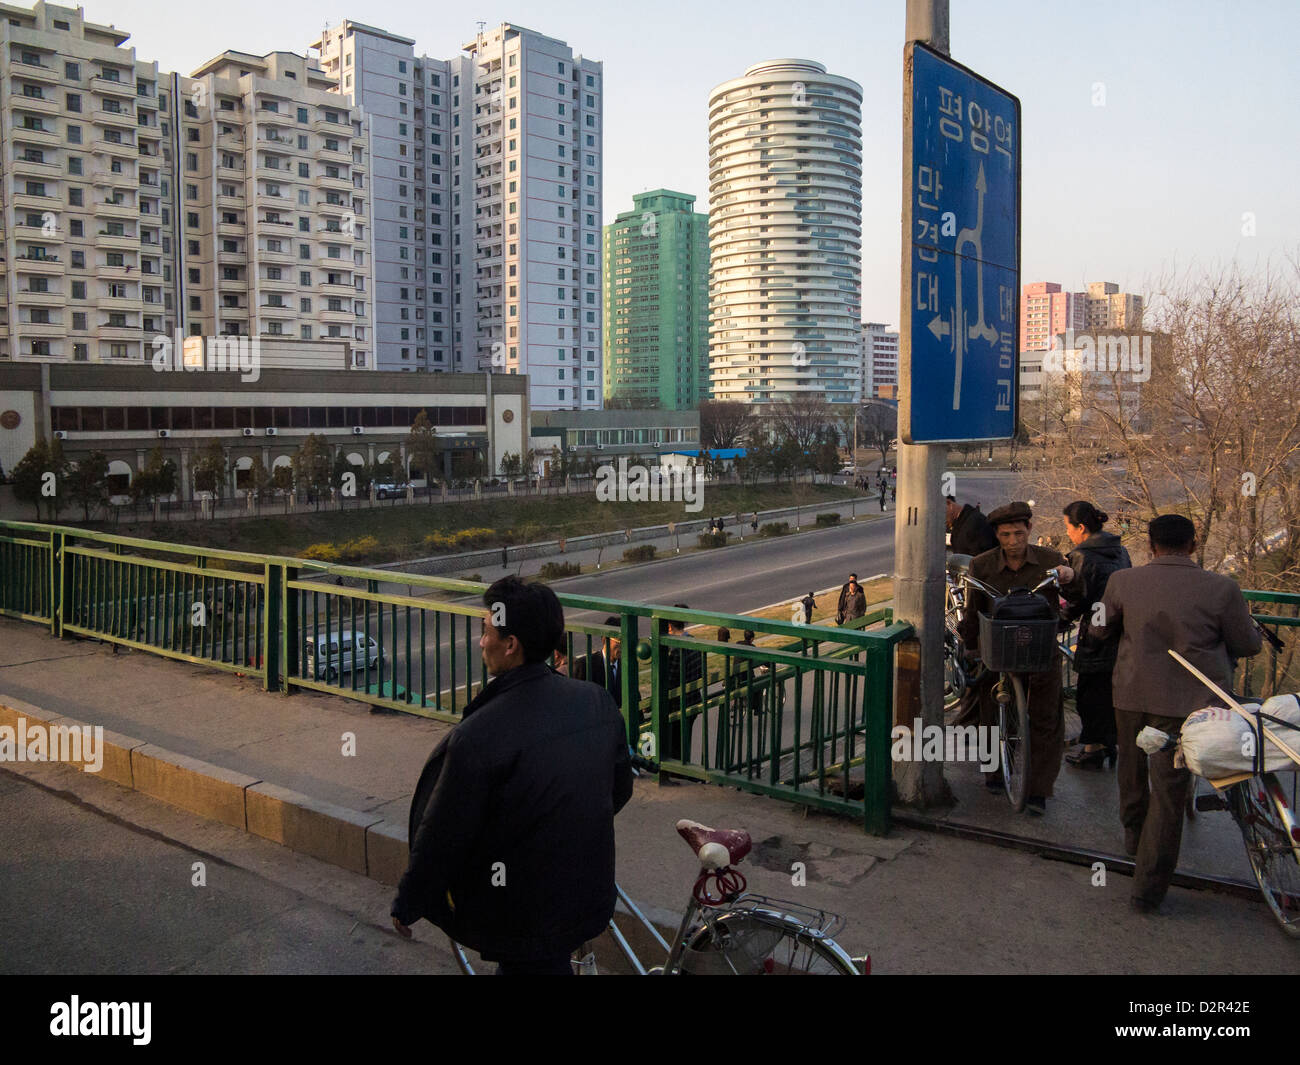 Típica escena de la calle en la capital, Pyongyang, República Popular Democrática de Corea (RPDC), Corea del Norte, Asia Foto de stock